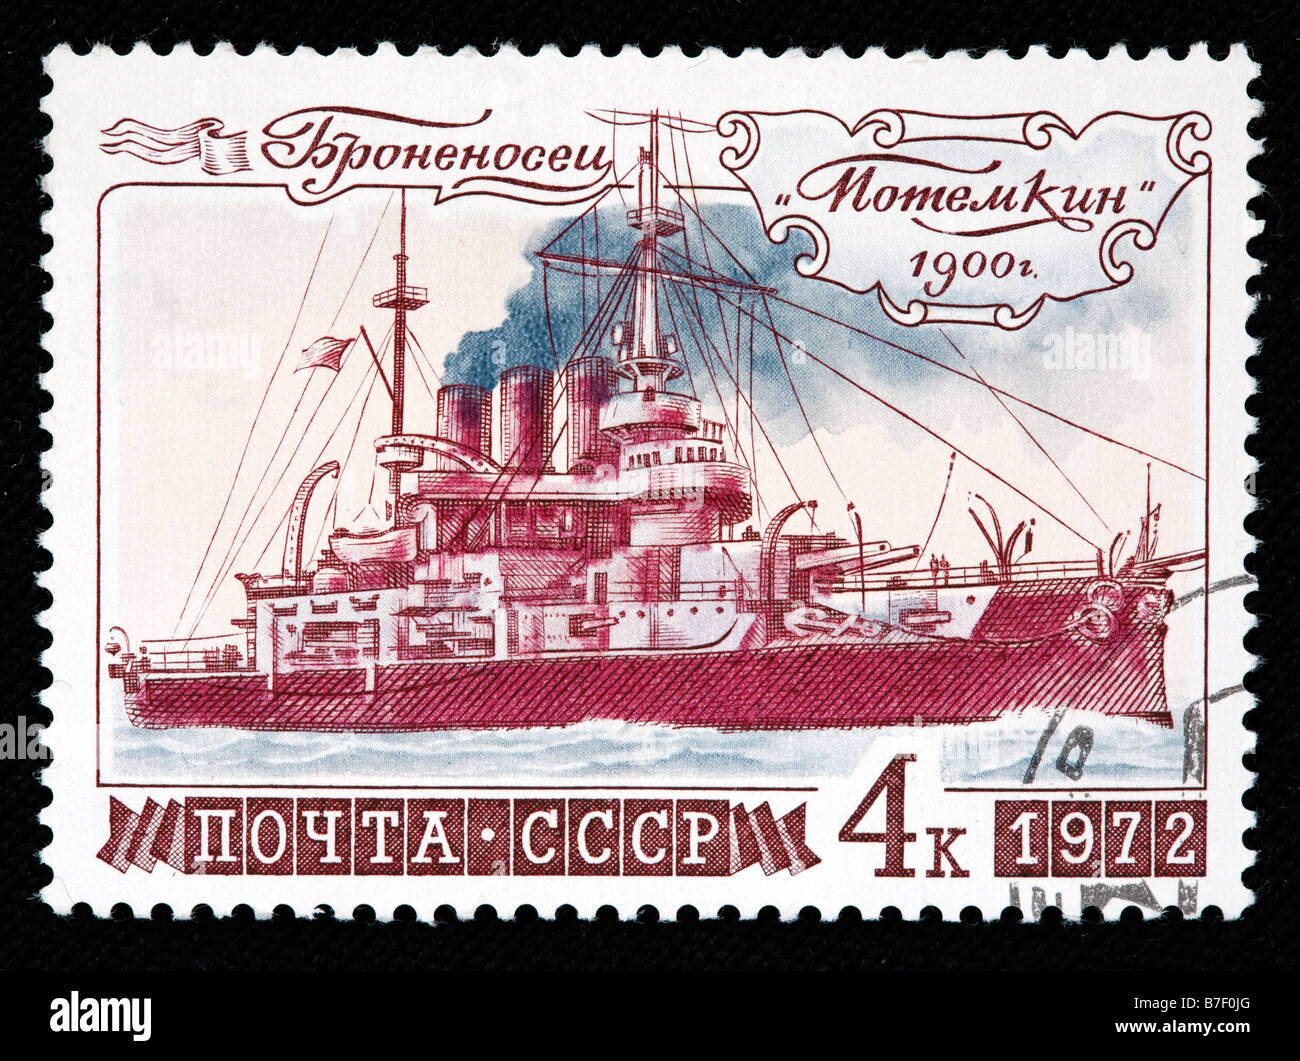 Russischer Panzerkreuzer "Potemkin" (1900), Briefmarke, UdSSR, 1972 Stockfoto